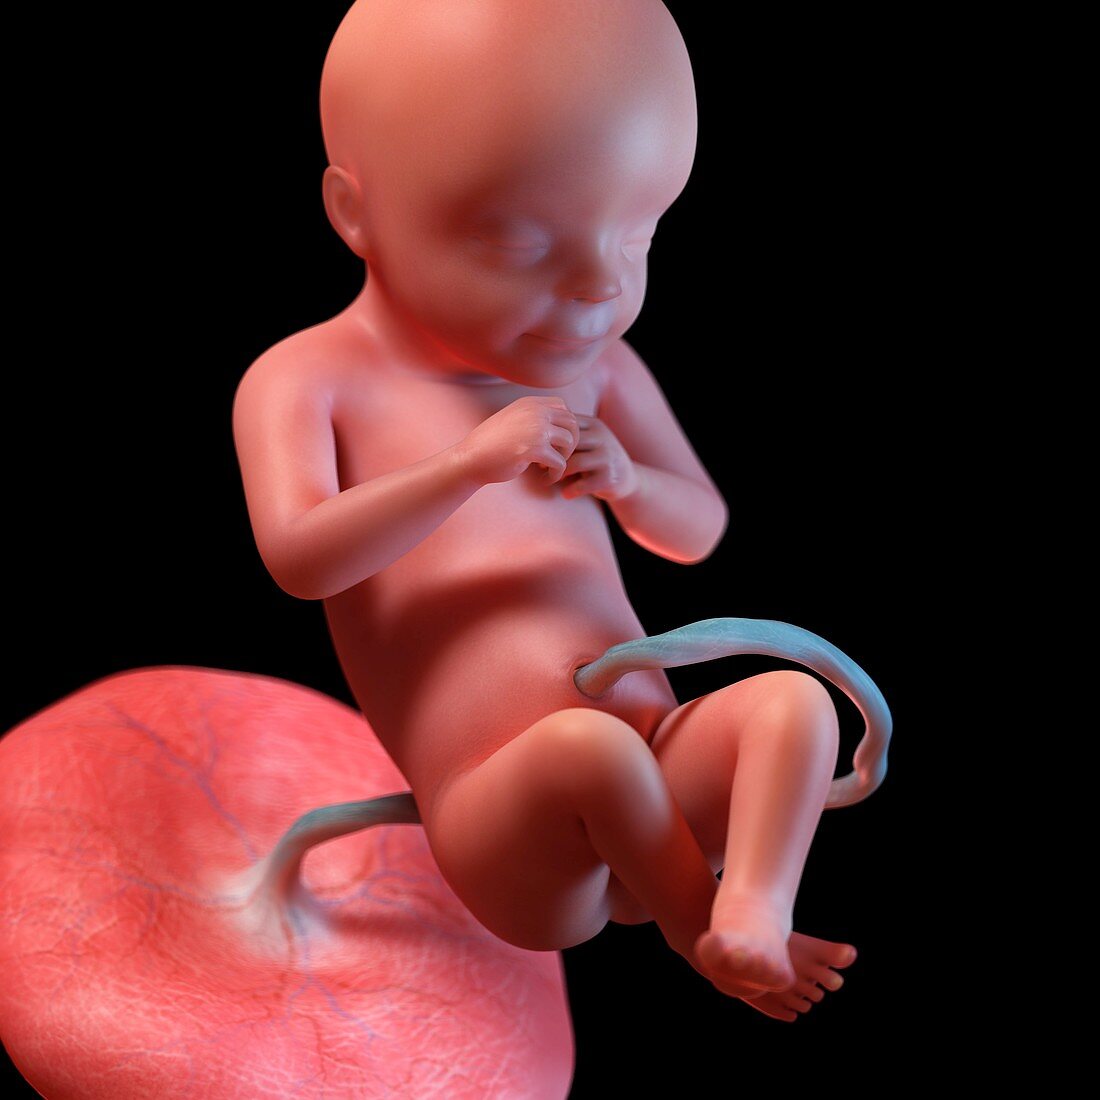 Human foetus age 28 weeks, illustration